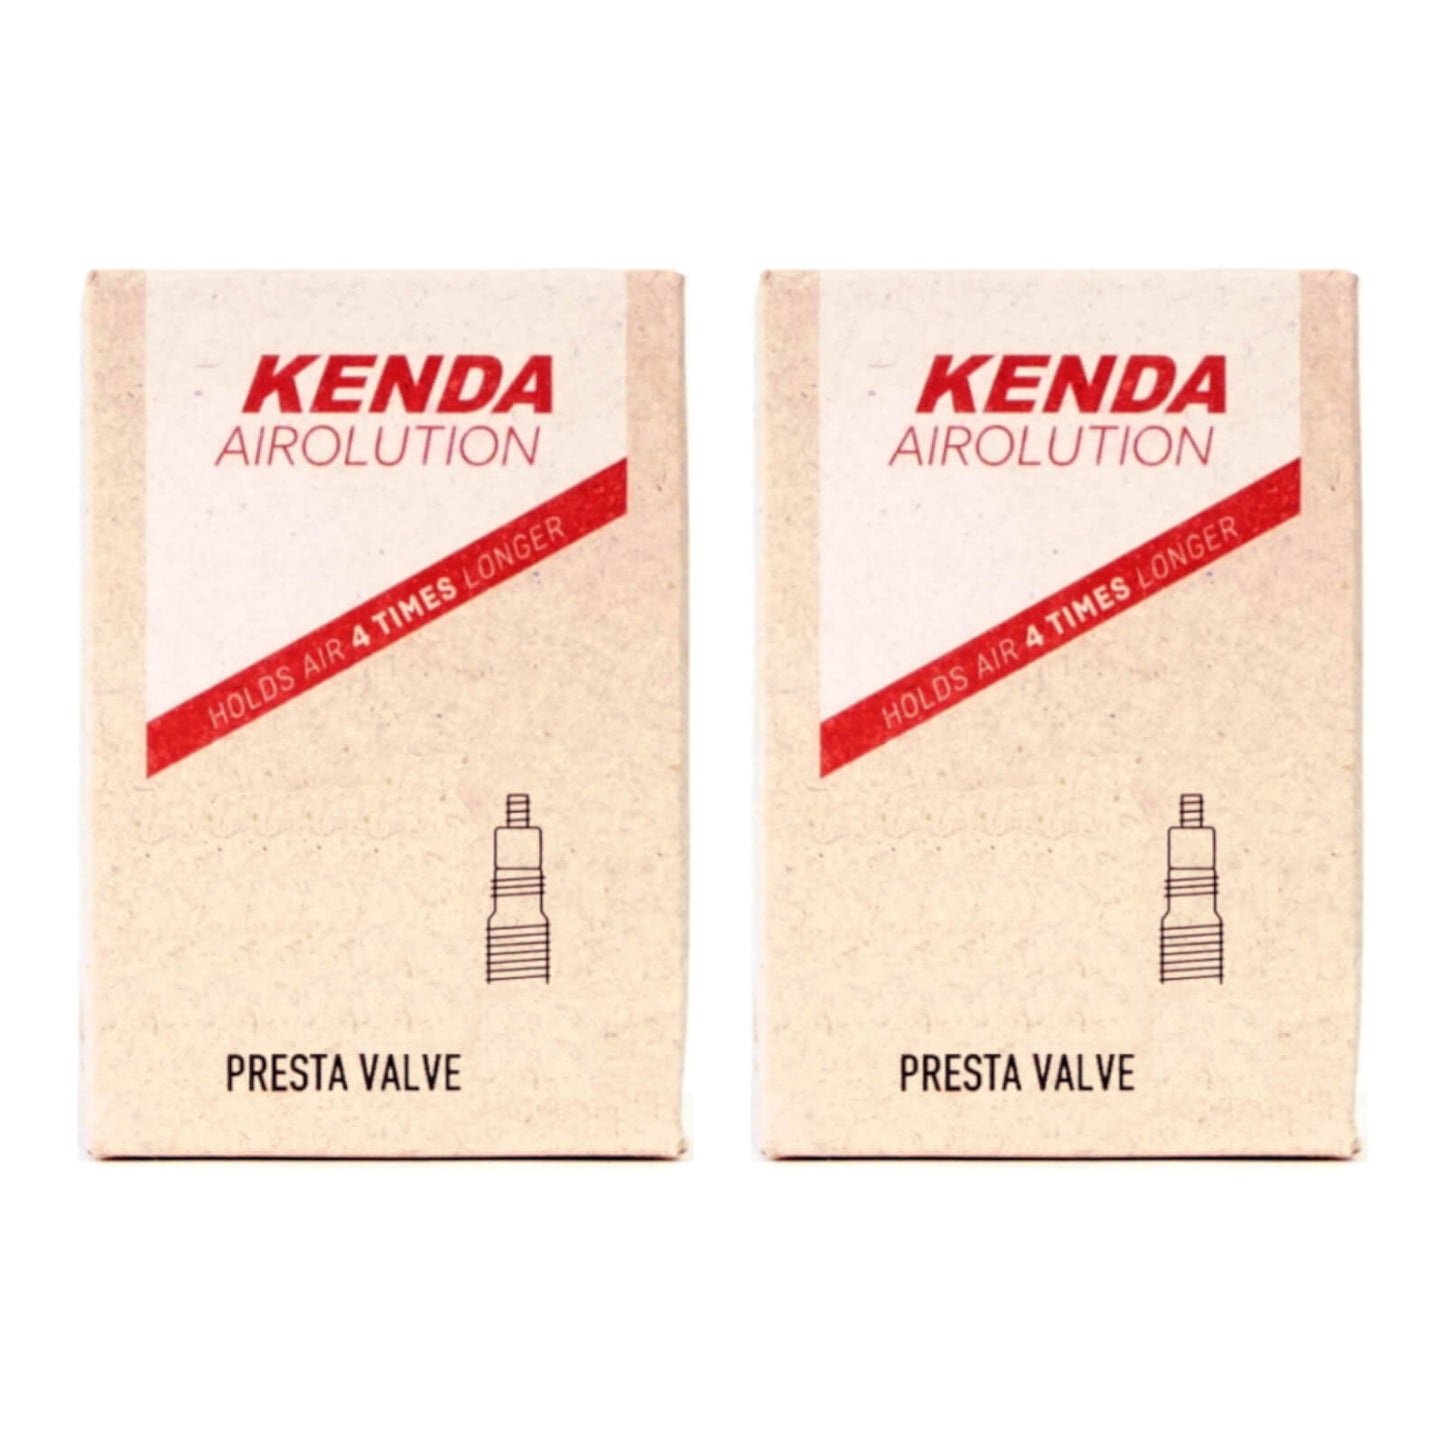 Kenda Airolution 27.5x2.4-2.8" 27.5 Inch Presta Valve Bike Inner Tube Pack of 2